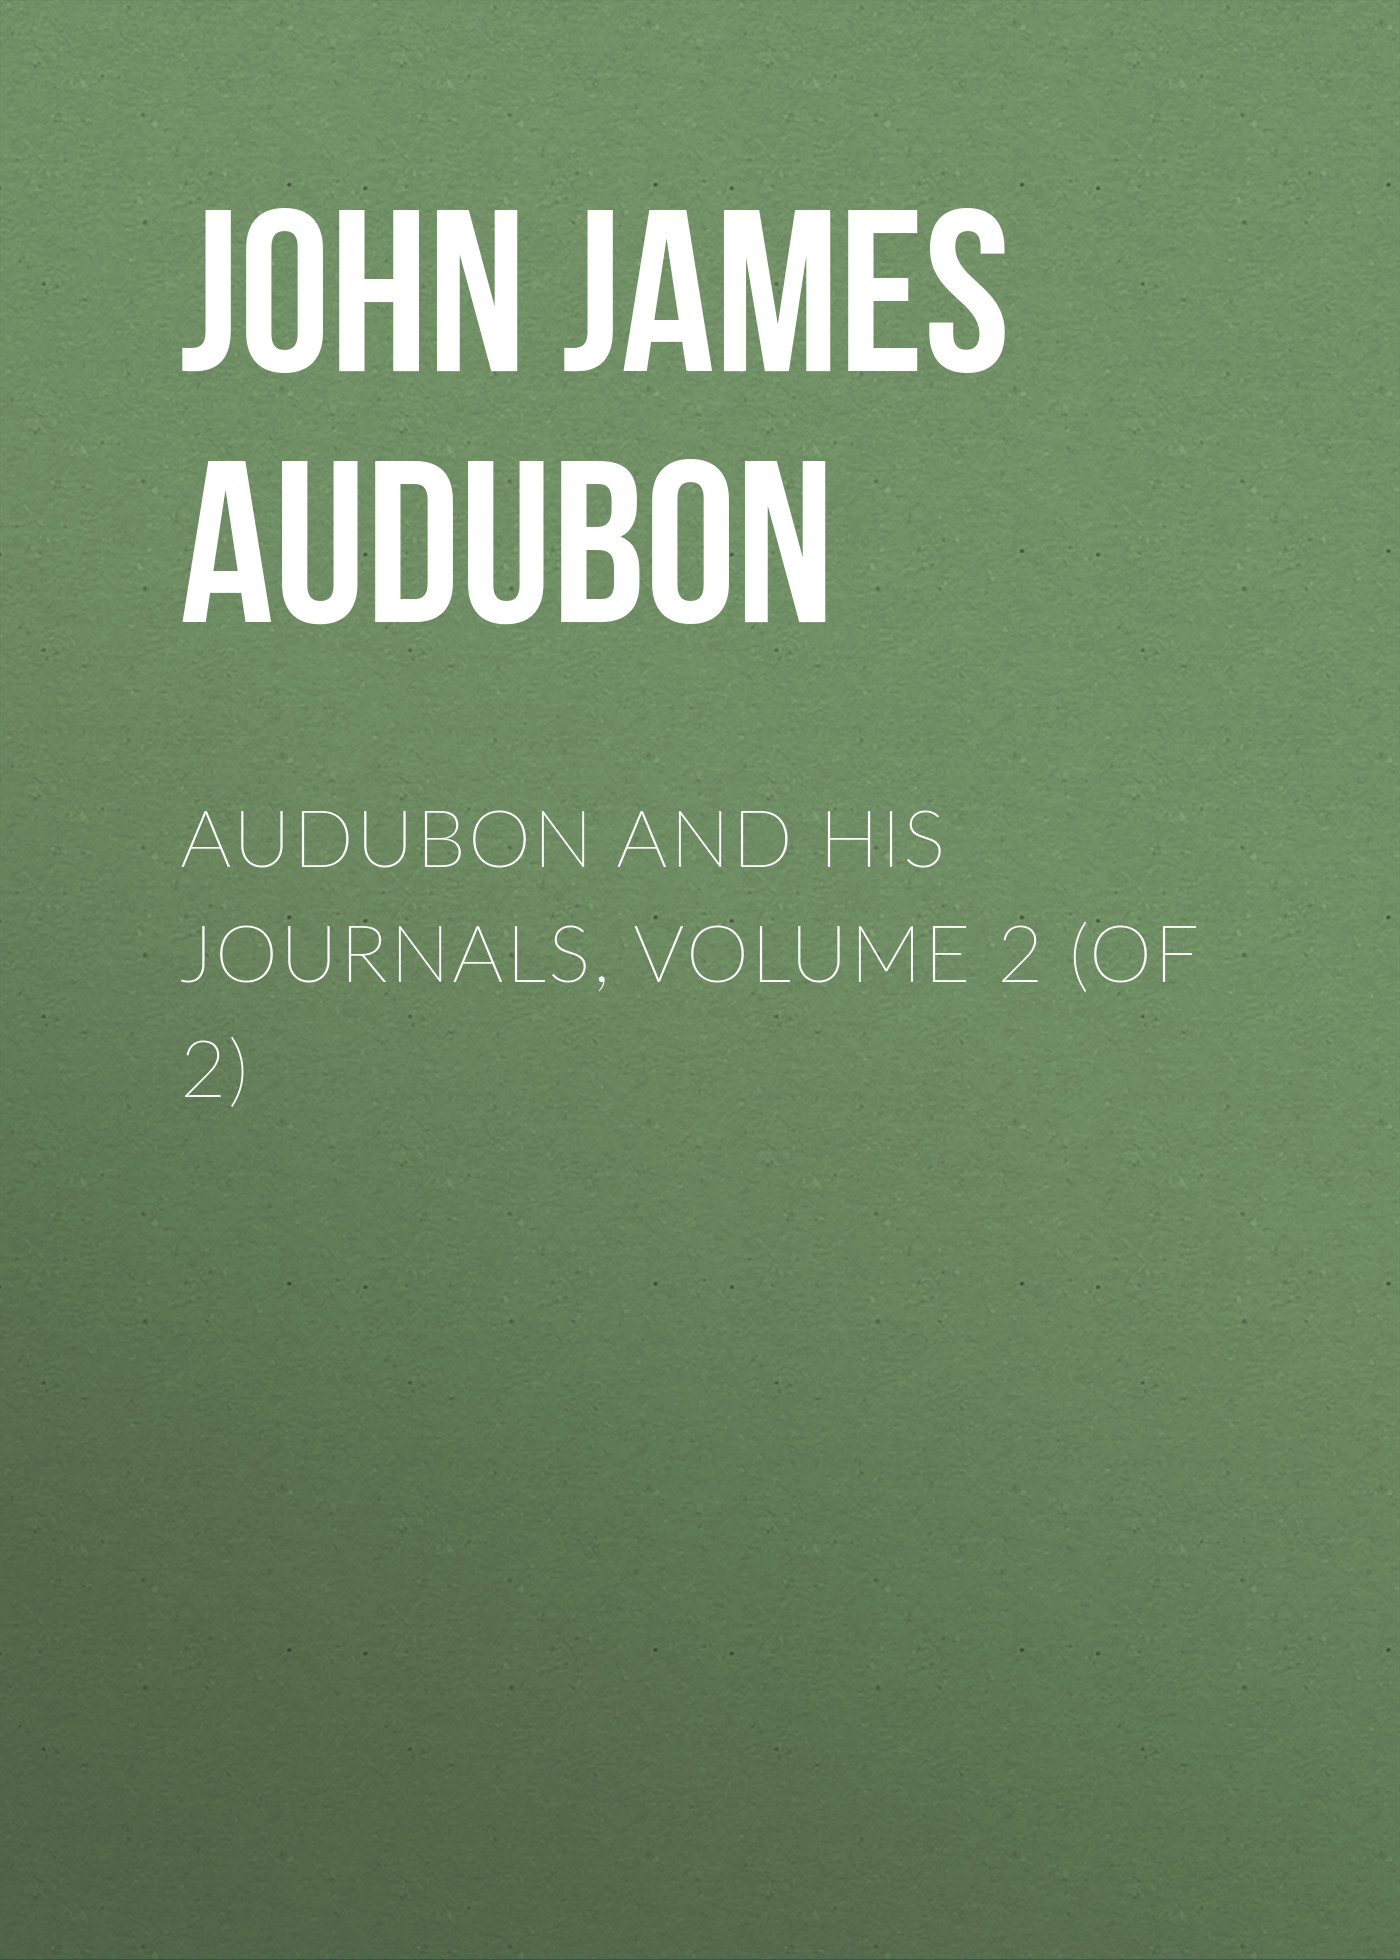 Книга Audubon and his Journals, Volume 2 (of 2) из серии , созданная John Audubon, может относится к жанру Зарубежная старинная литература, Зарубежная классика. Стоимость электронной книги Audubon and his Journals, Volume 2 (of 2) с идентификатором 24167196 составляет 0.90 руб.